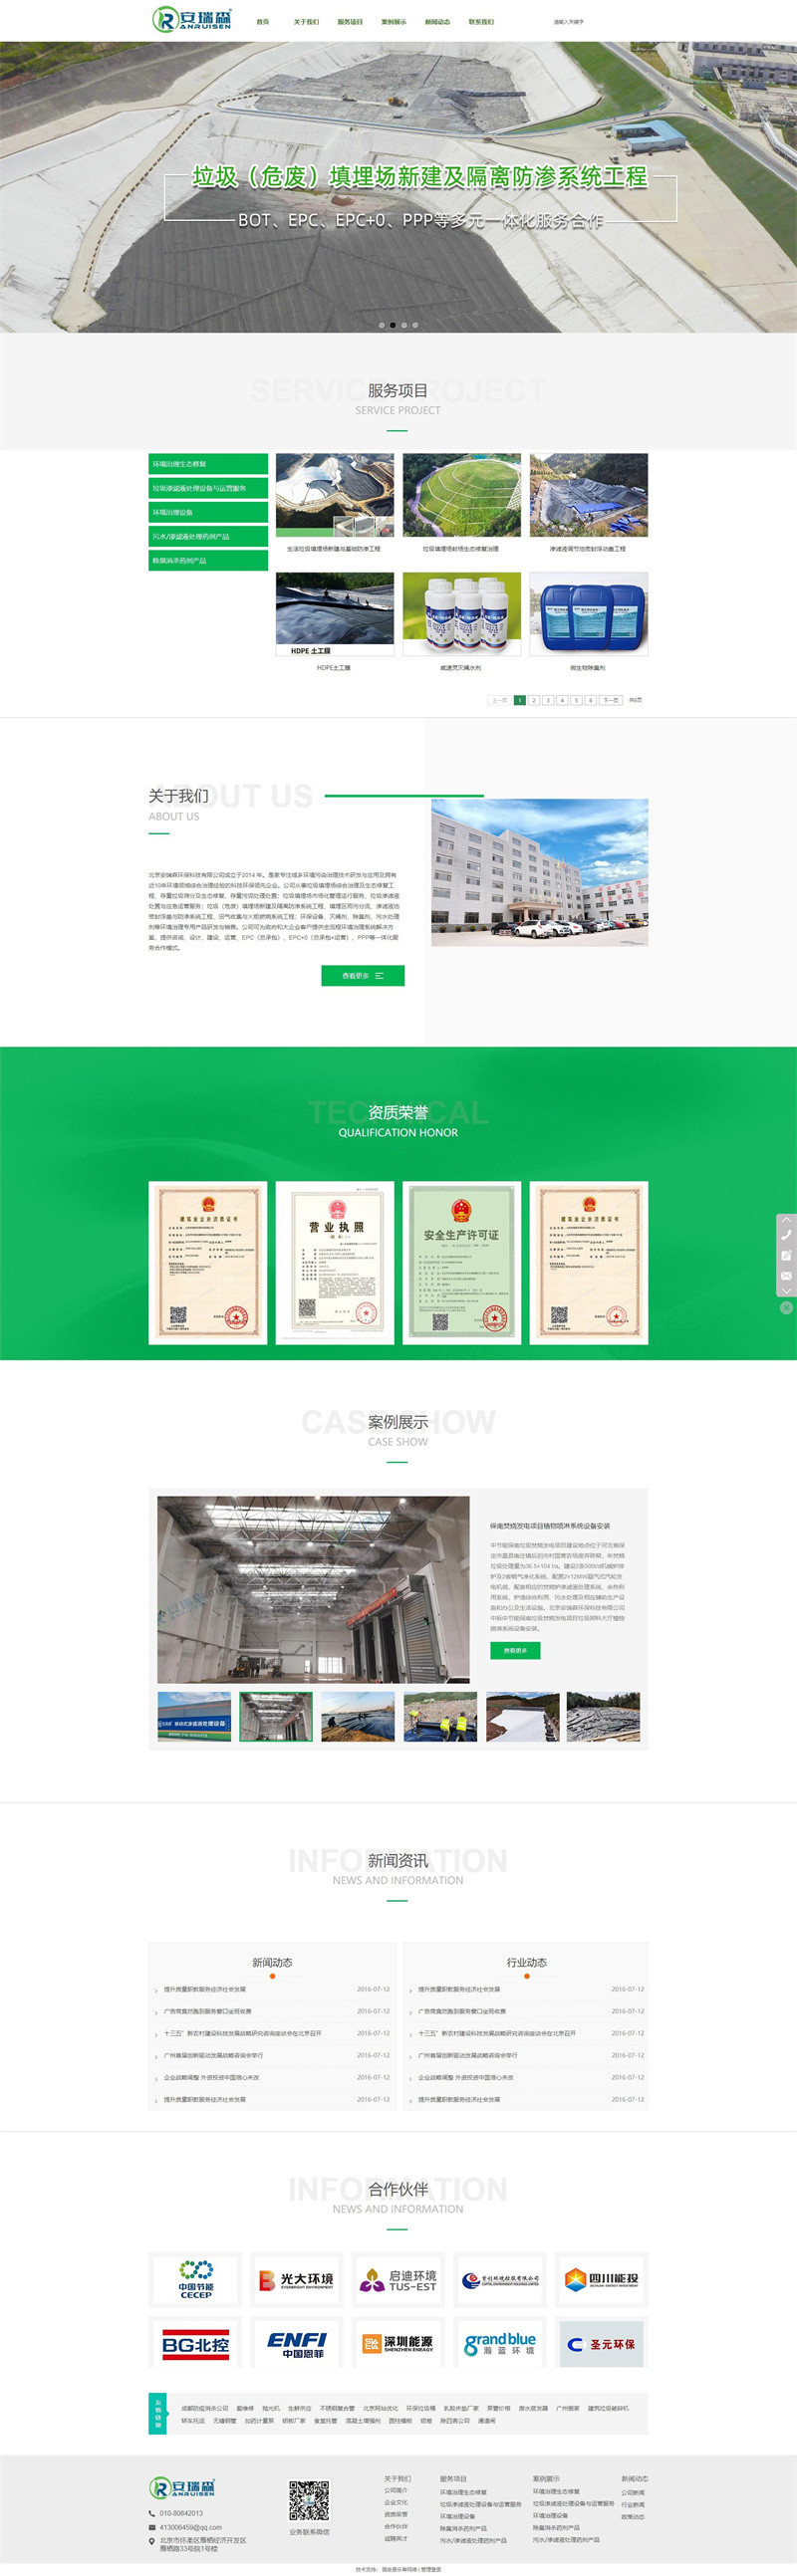 台州网站建设优化企业排名_(台州网站建设优化企业排名公示)